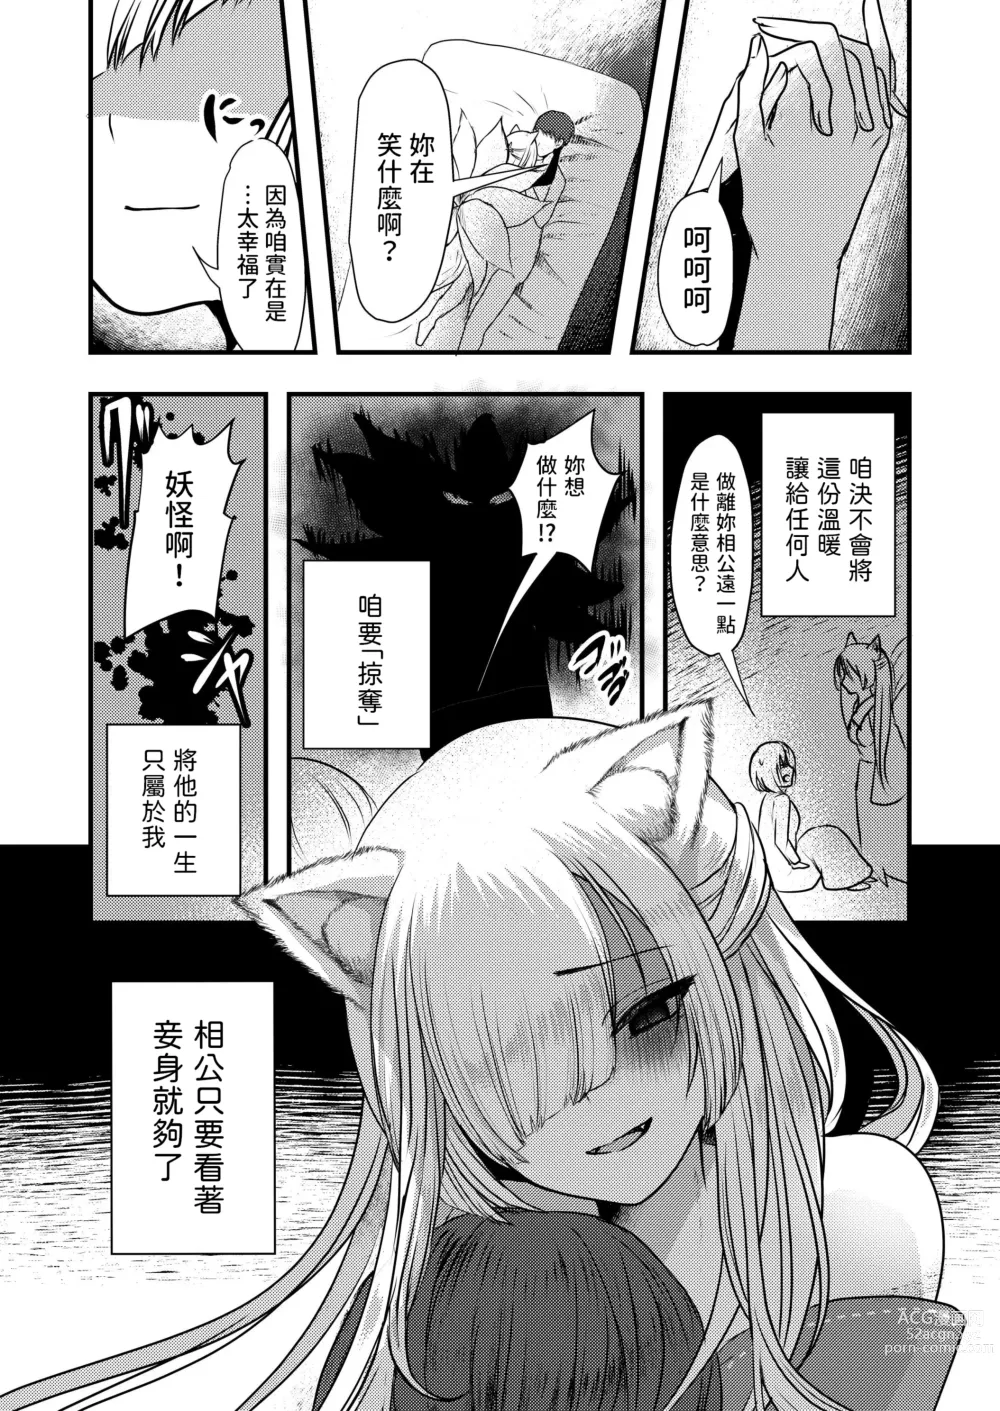 Page 21 of doujinshi Yandere Youkai ~Shittobukai Kyuubi no Kitsune-san Hen~